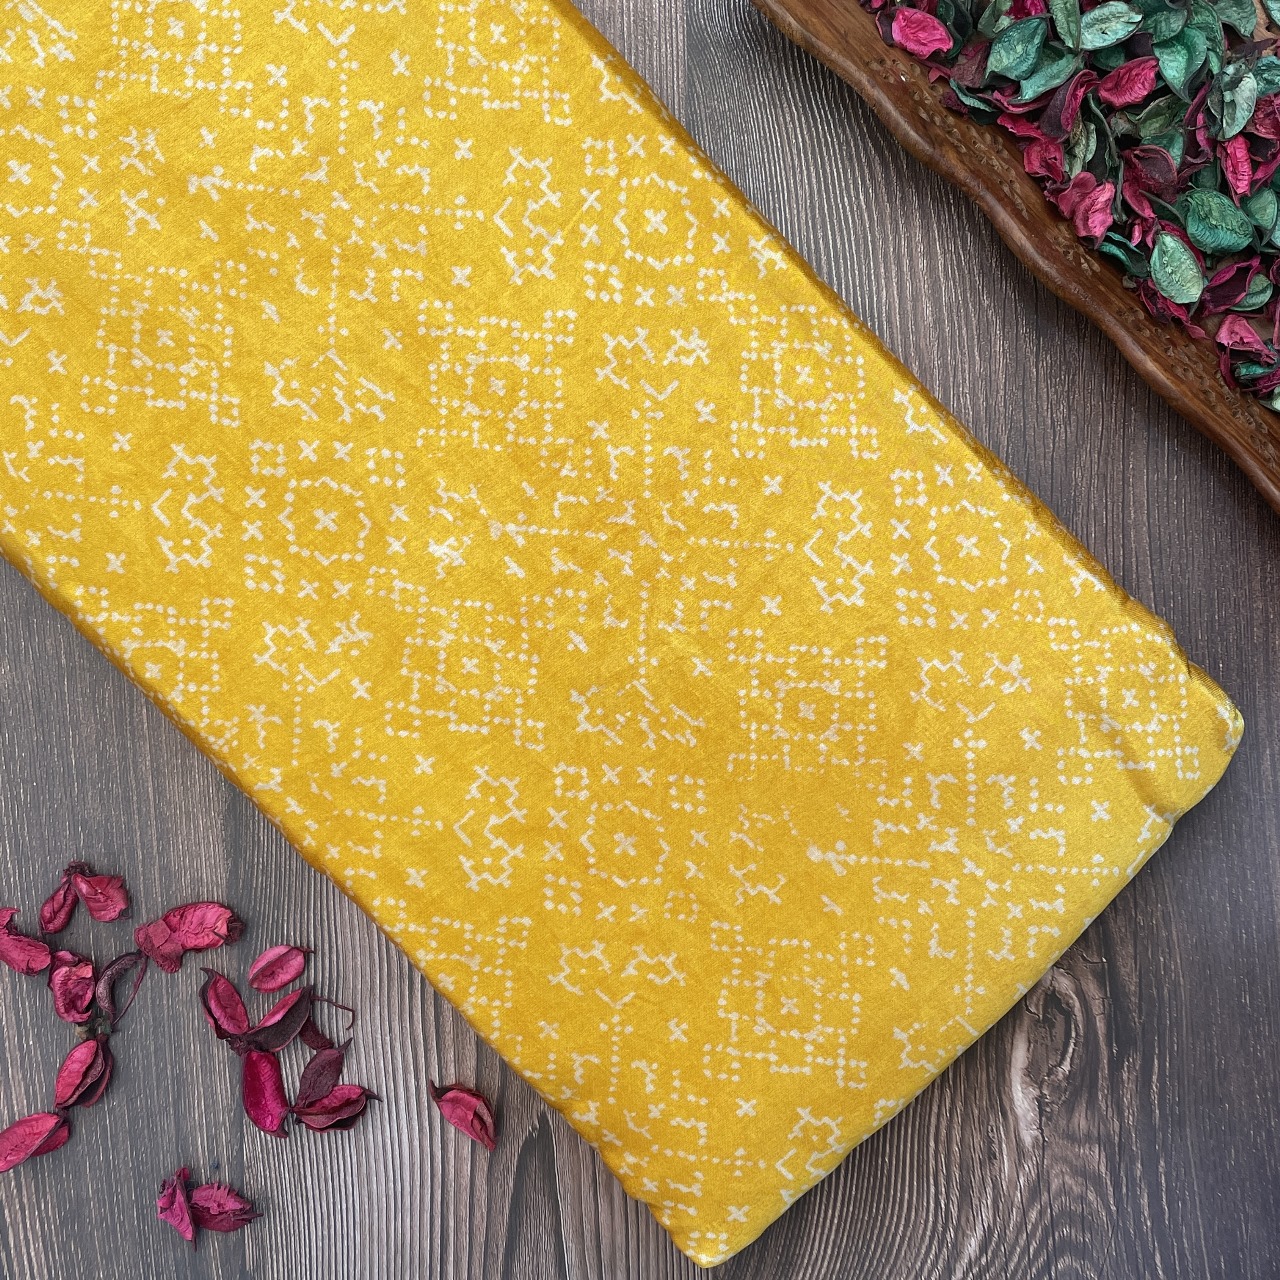 Mashru Silk Hand Block Printed Fabric - Yellow